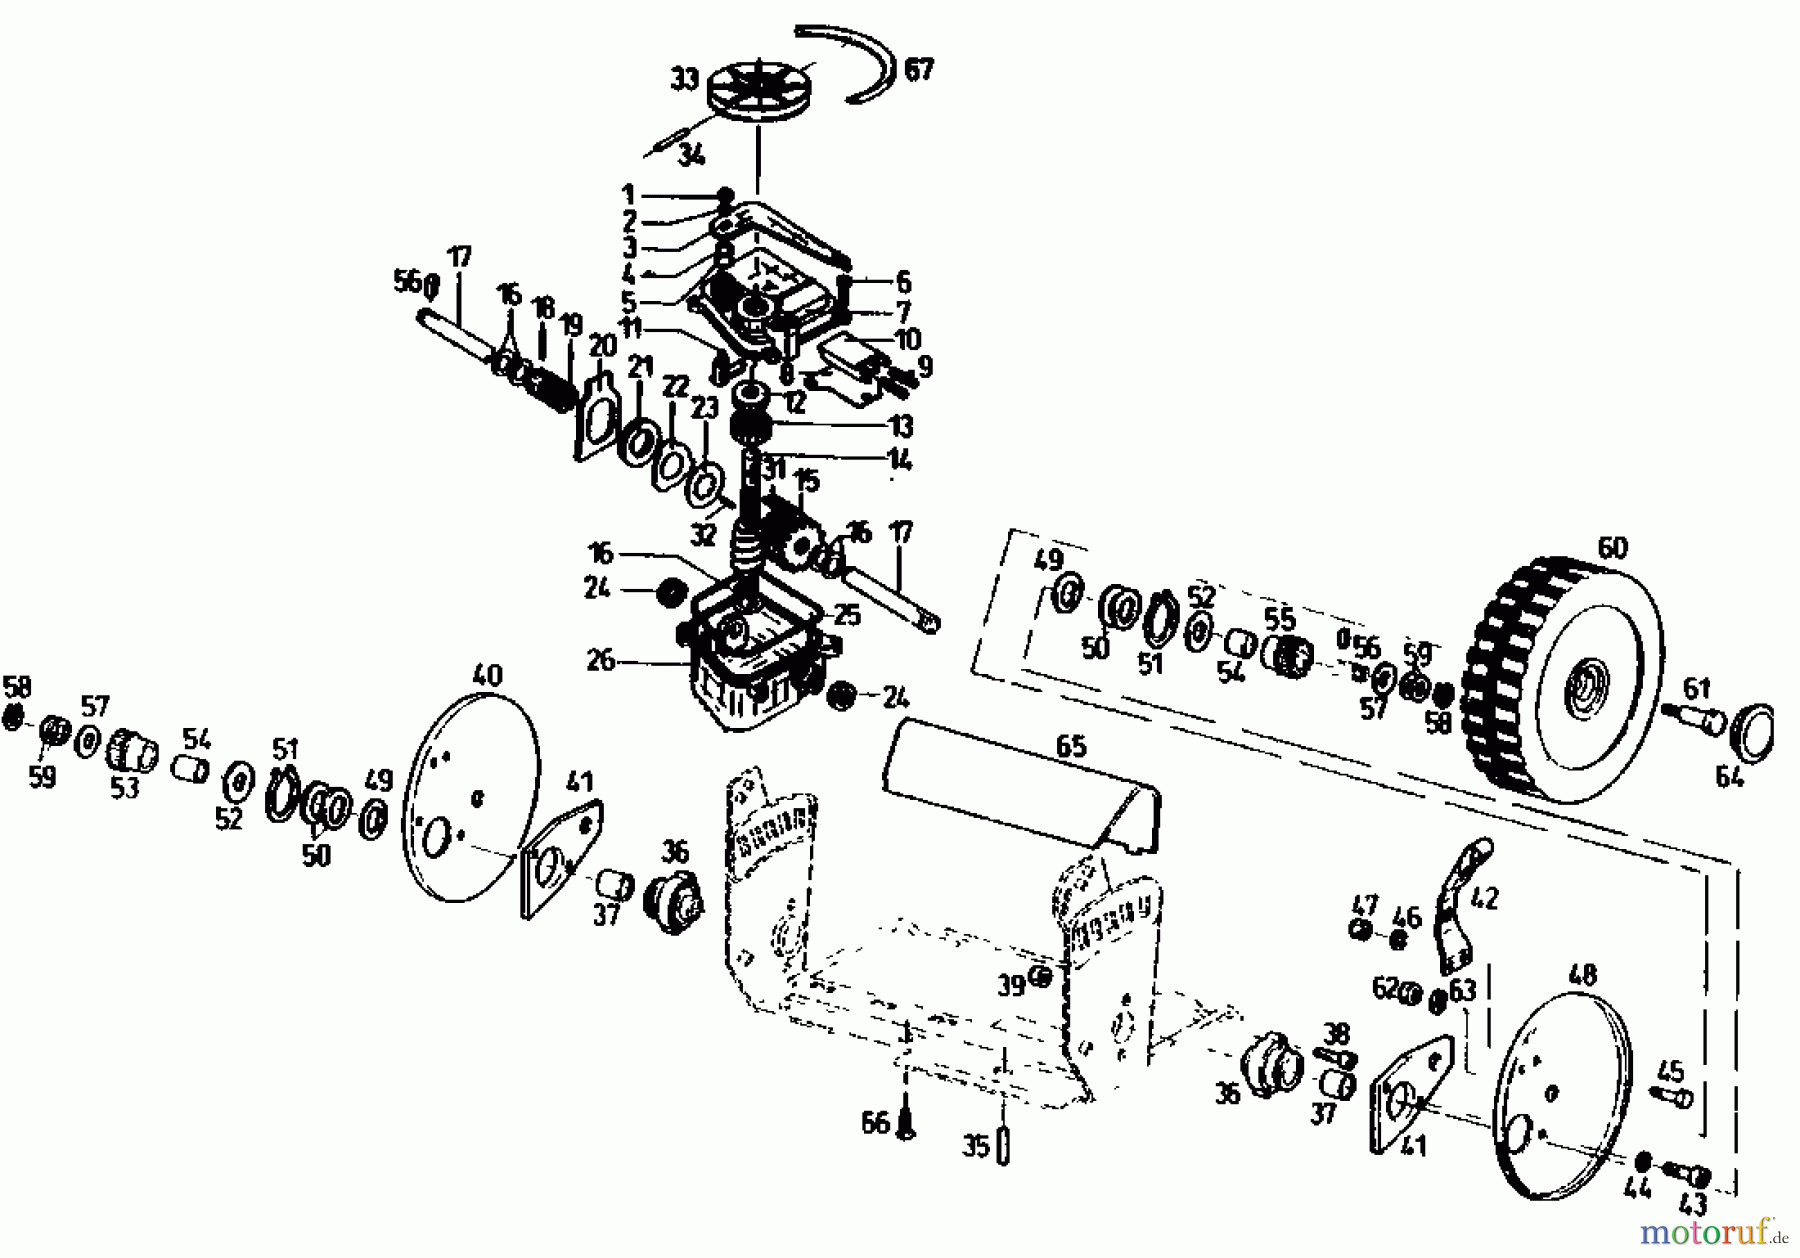  Gutbrod Motormäher mit Antrieb TURBO HBSRE 04011.04  (1991) Getriebe